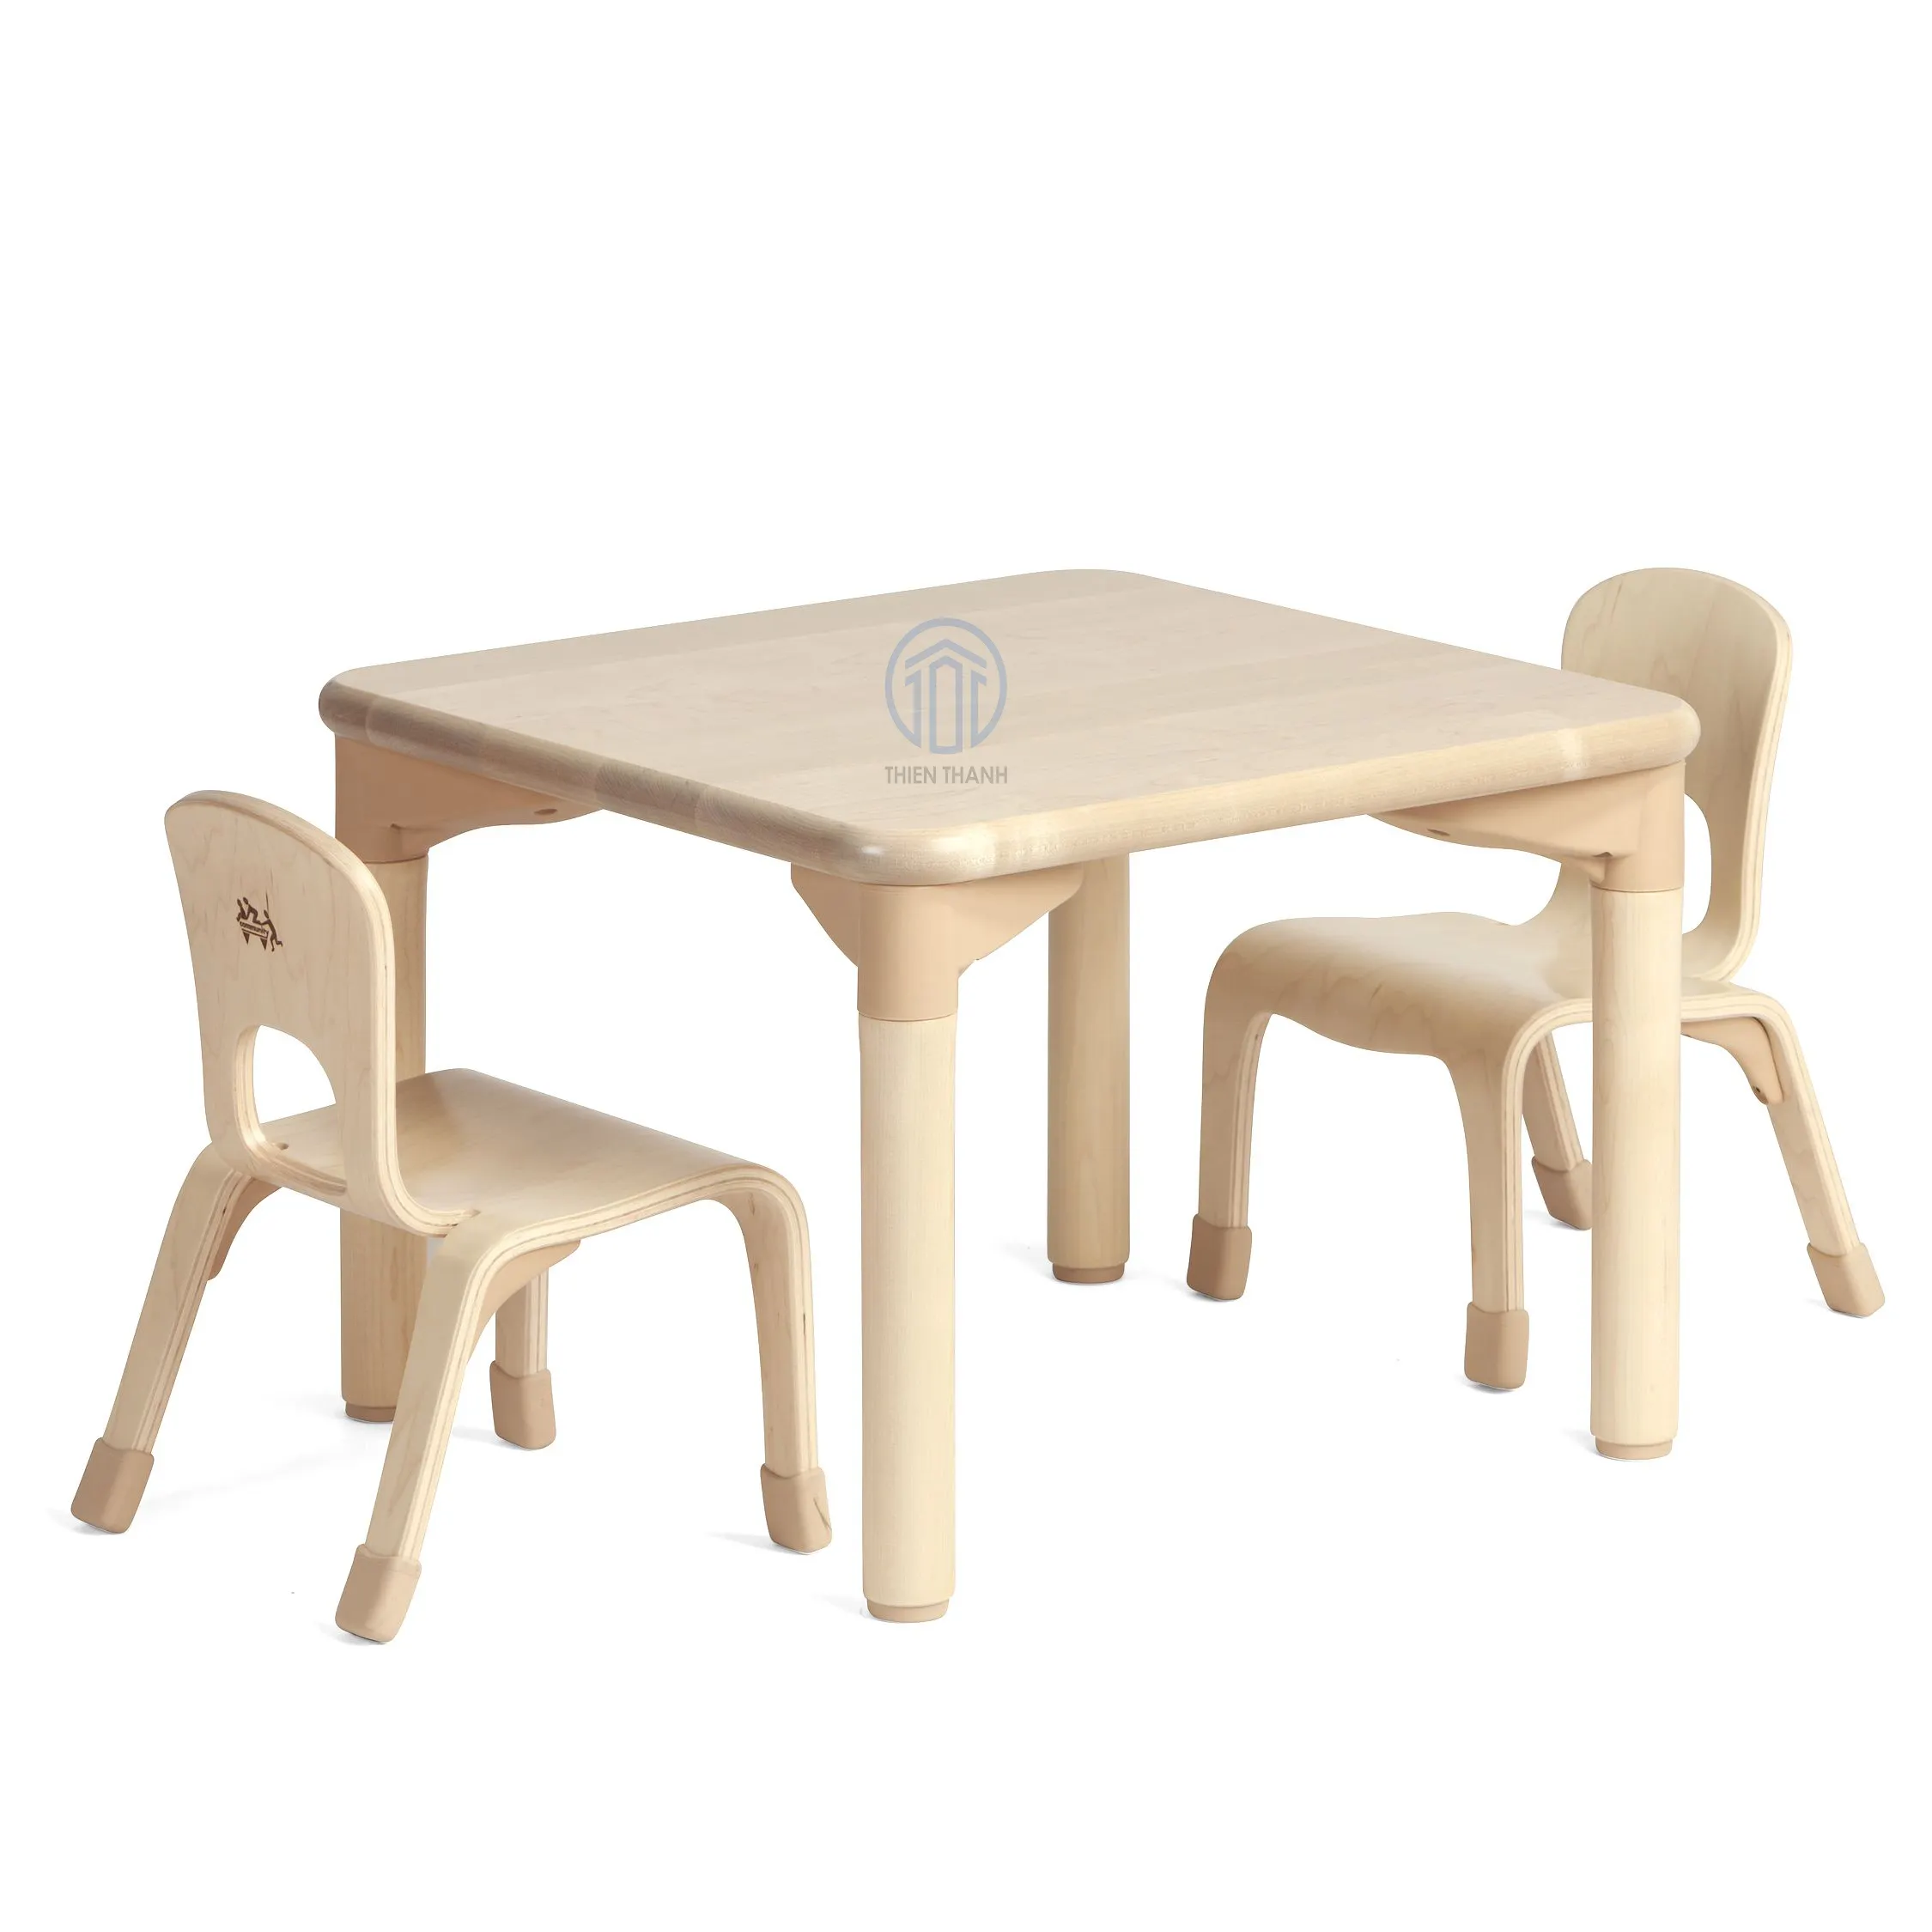 New Arrival tự nhiên làm bằng tay bàn gỗ & ghế Set cho trẻ em, Elegent phong cách Kid Bộ đồ nội thất cho trang trí nội thất bán buôn